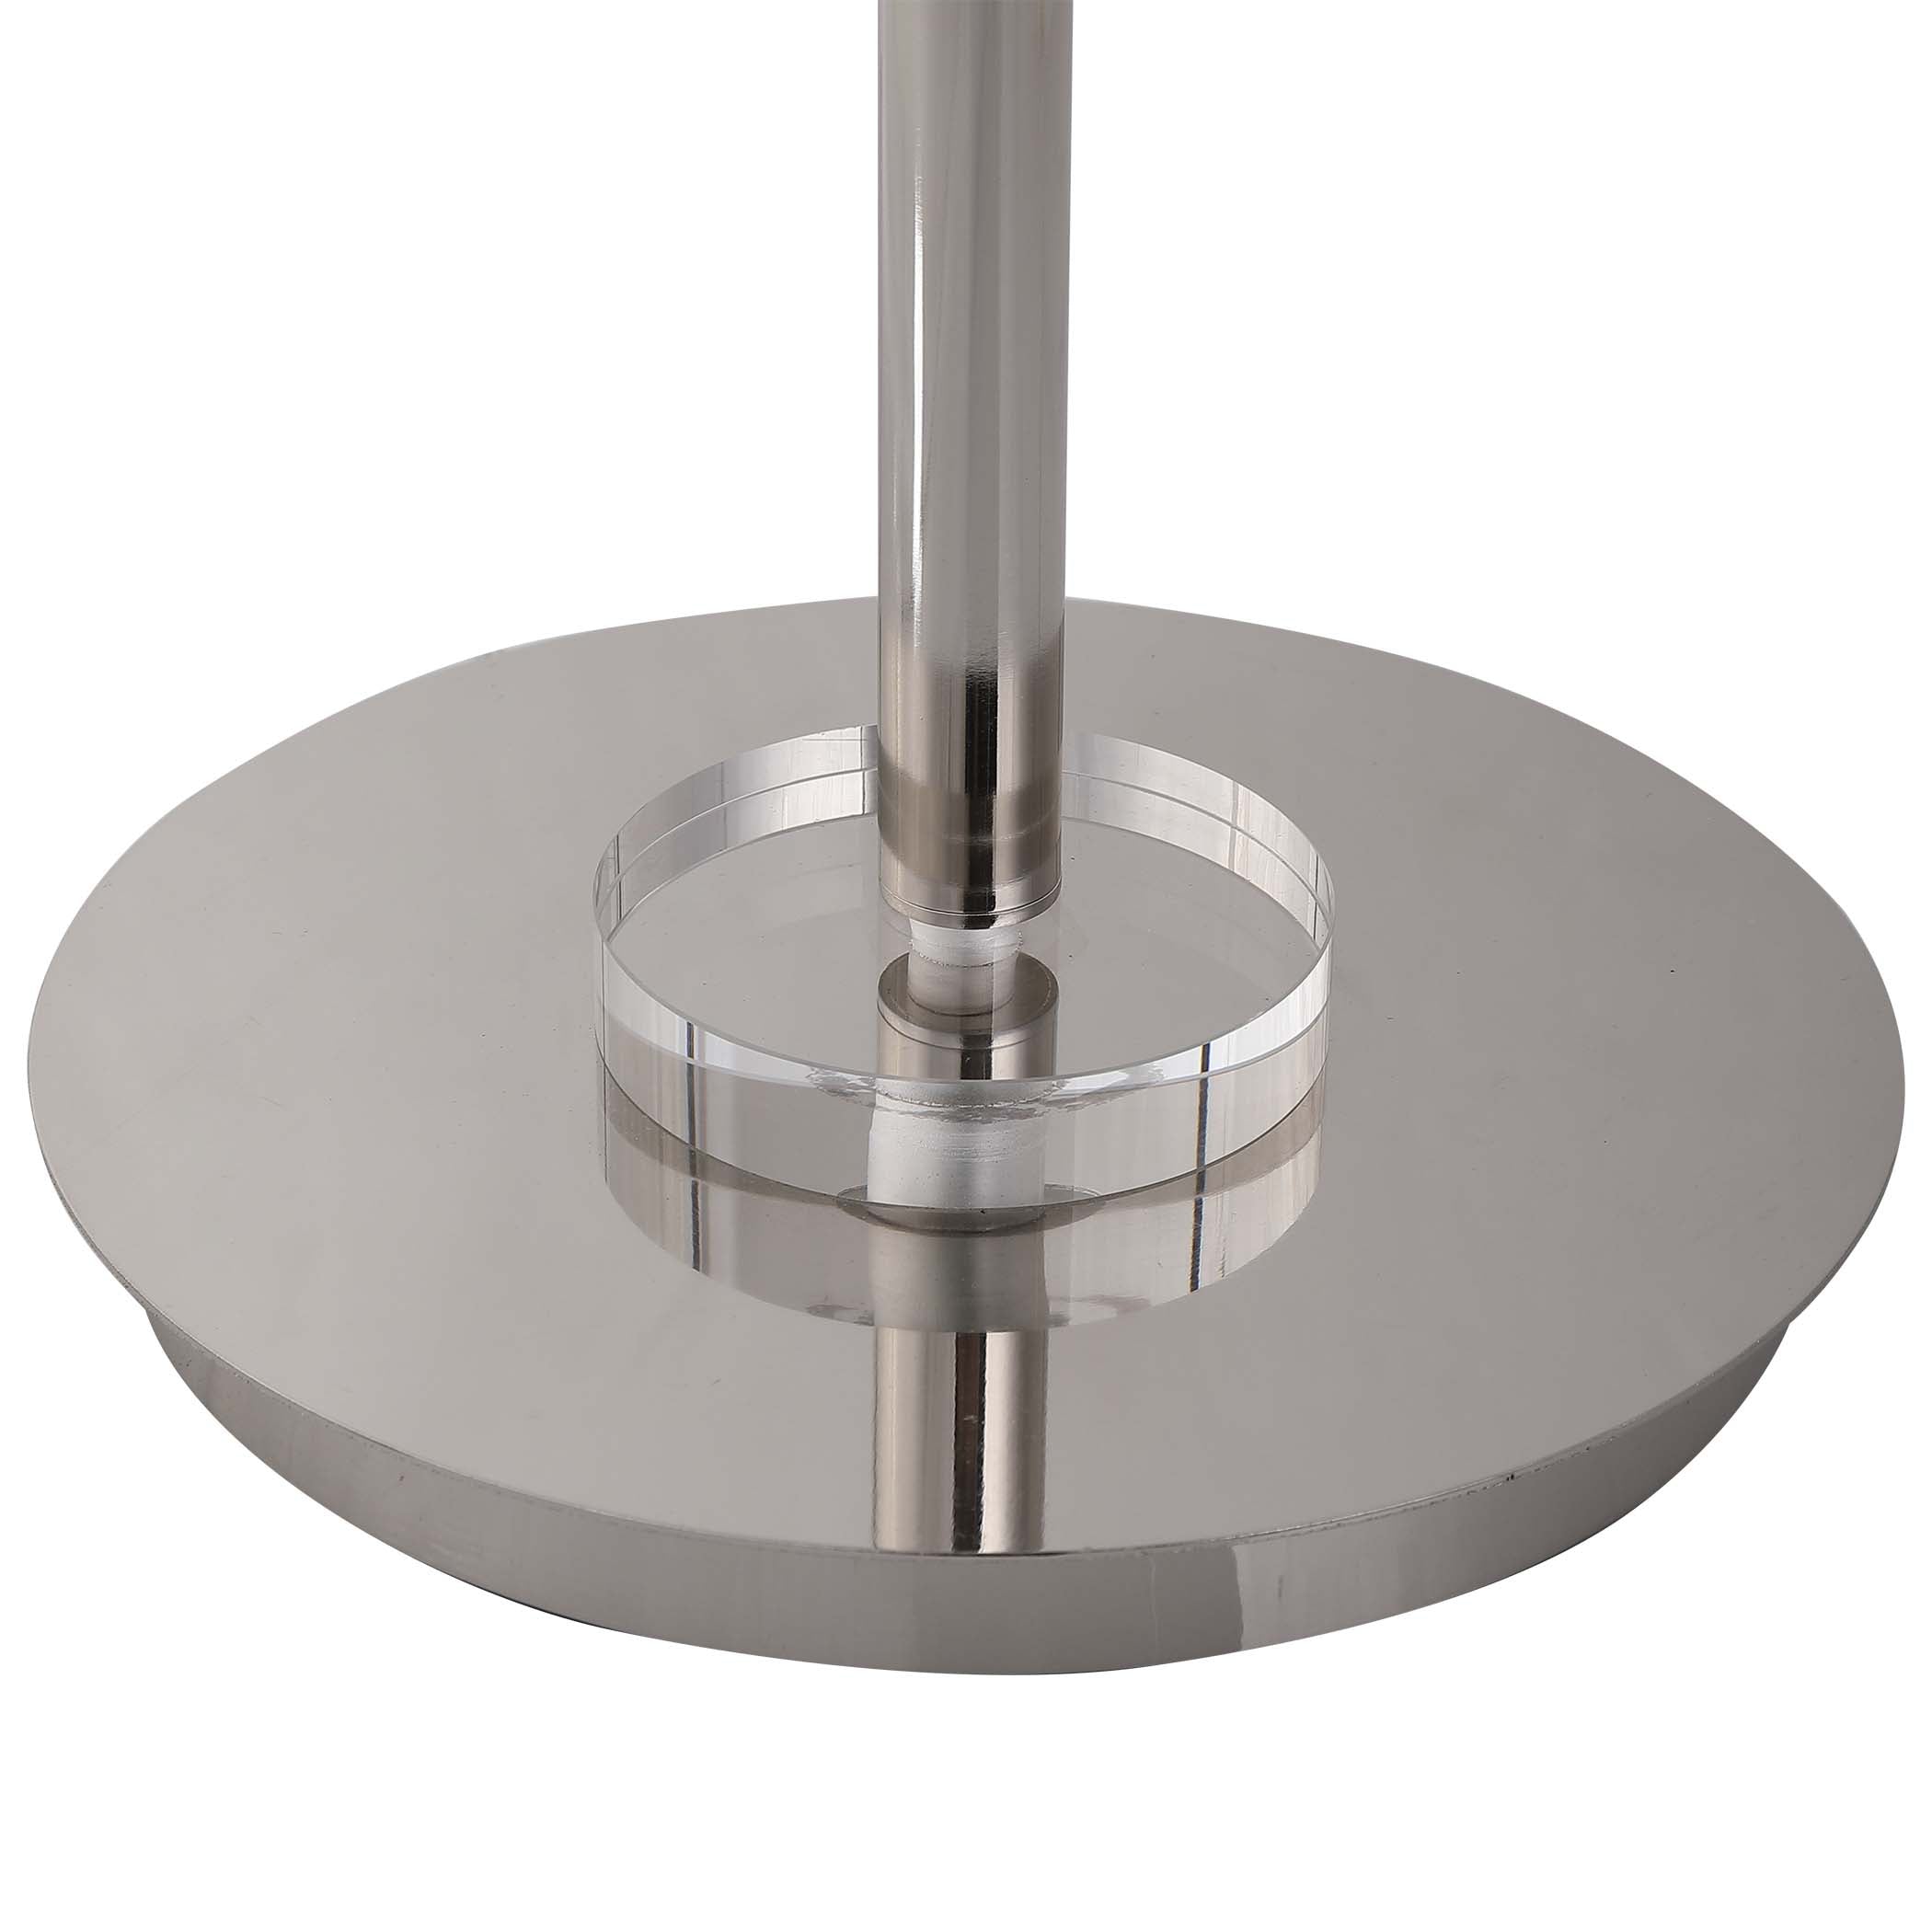 Decor Market Oval Metal Strap Base Floor Lamp- Polished Nickel